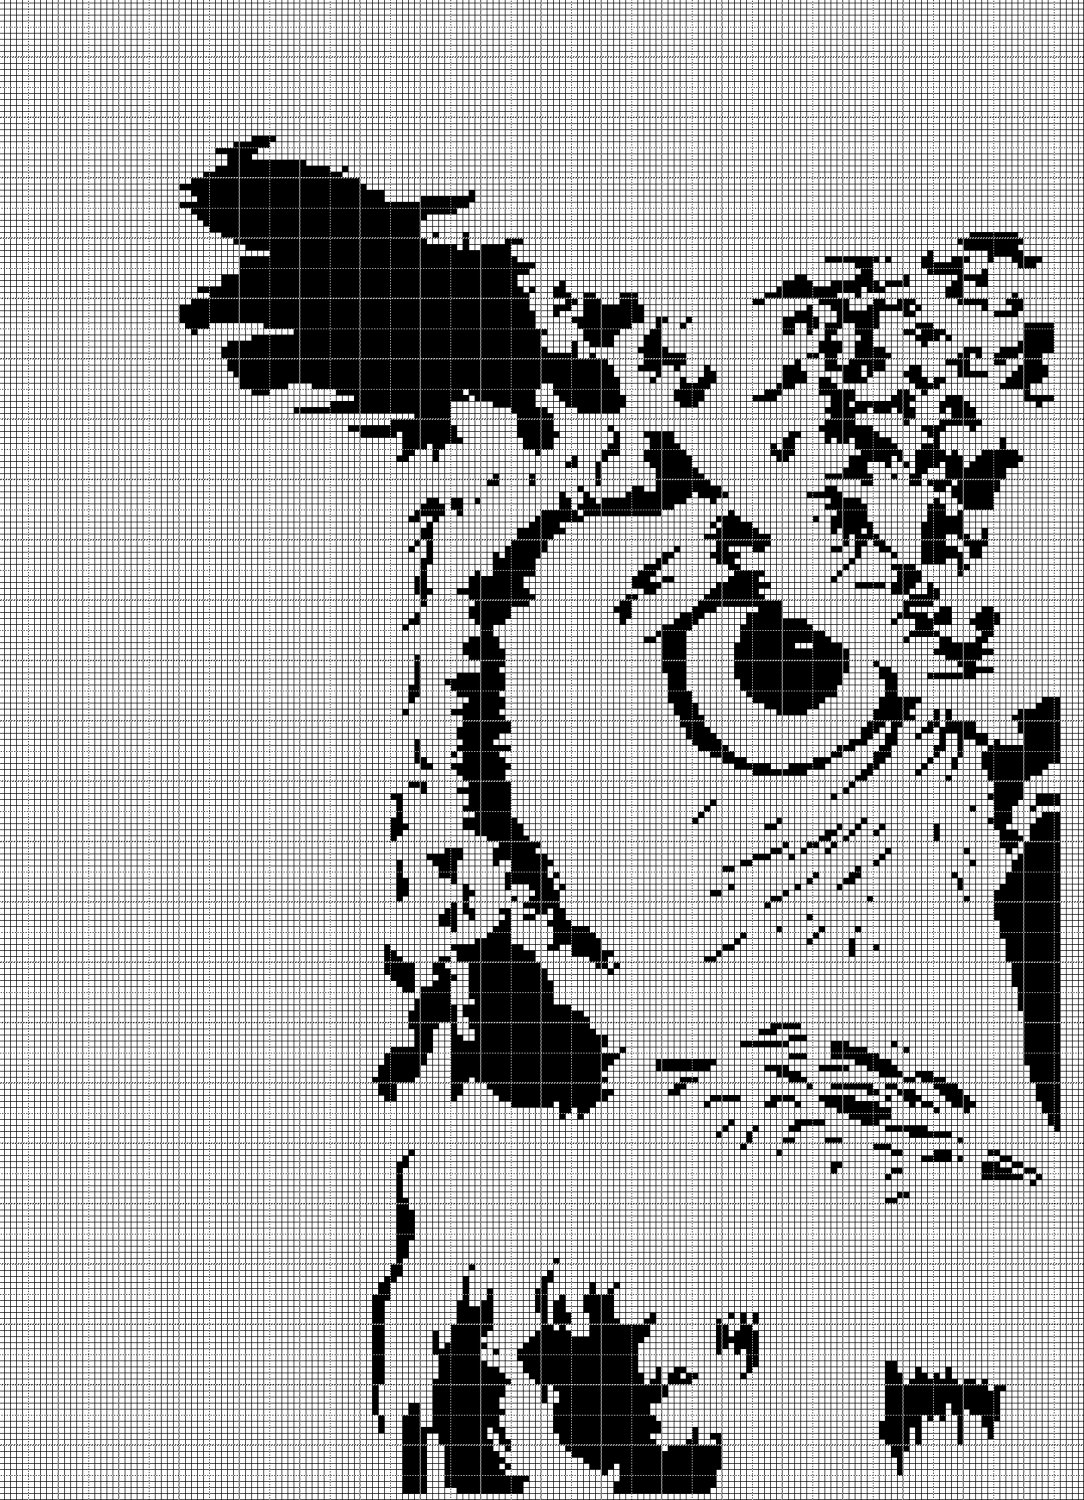 Owl head 2 silhouette cross stitch pattern in pdf